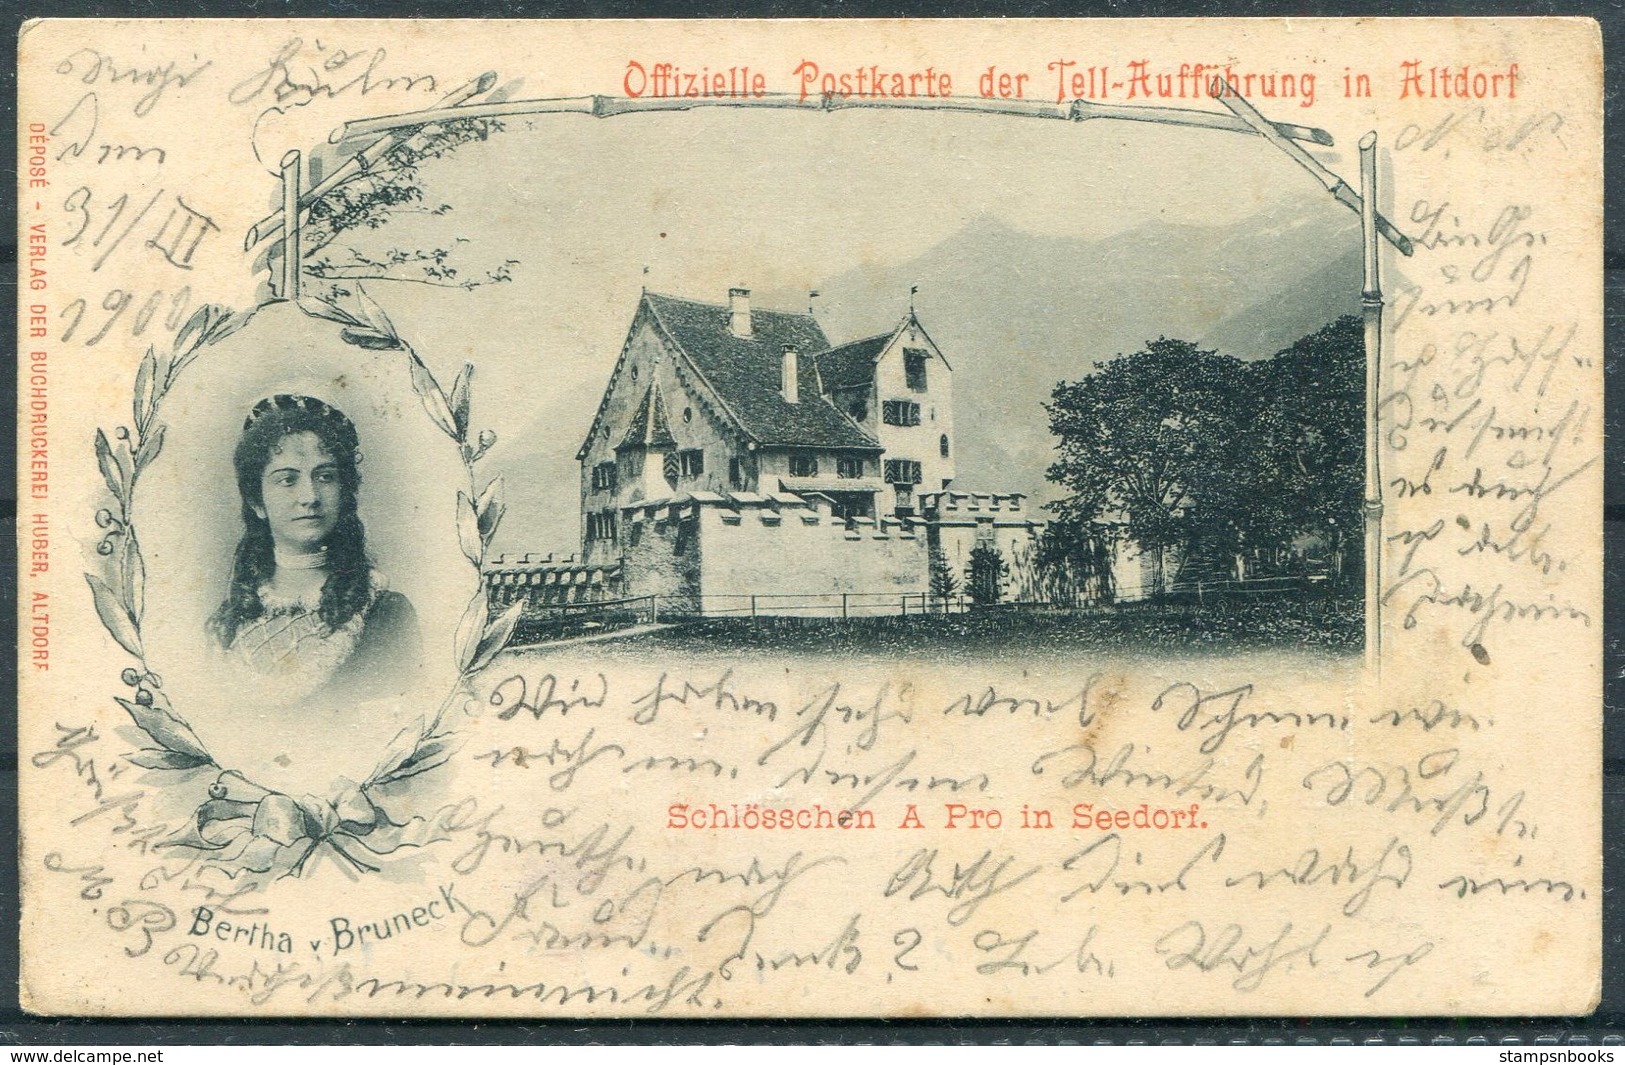 1900 Switzerland Offizielle Postkarte Der Tell-Aufführung In Altdorf. Arth - Wolfenschiessen - Covers & Documents